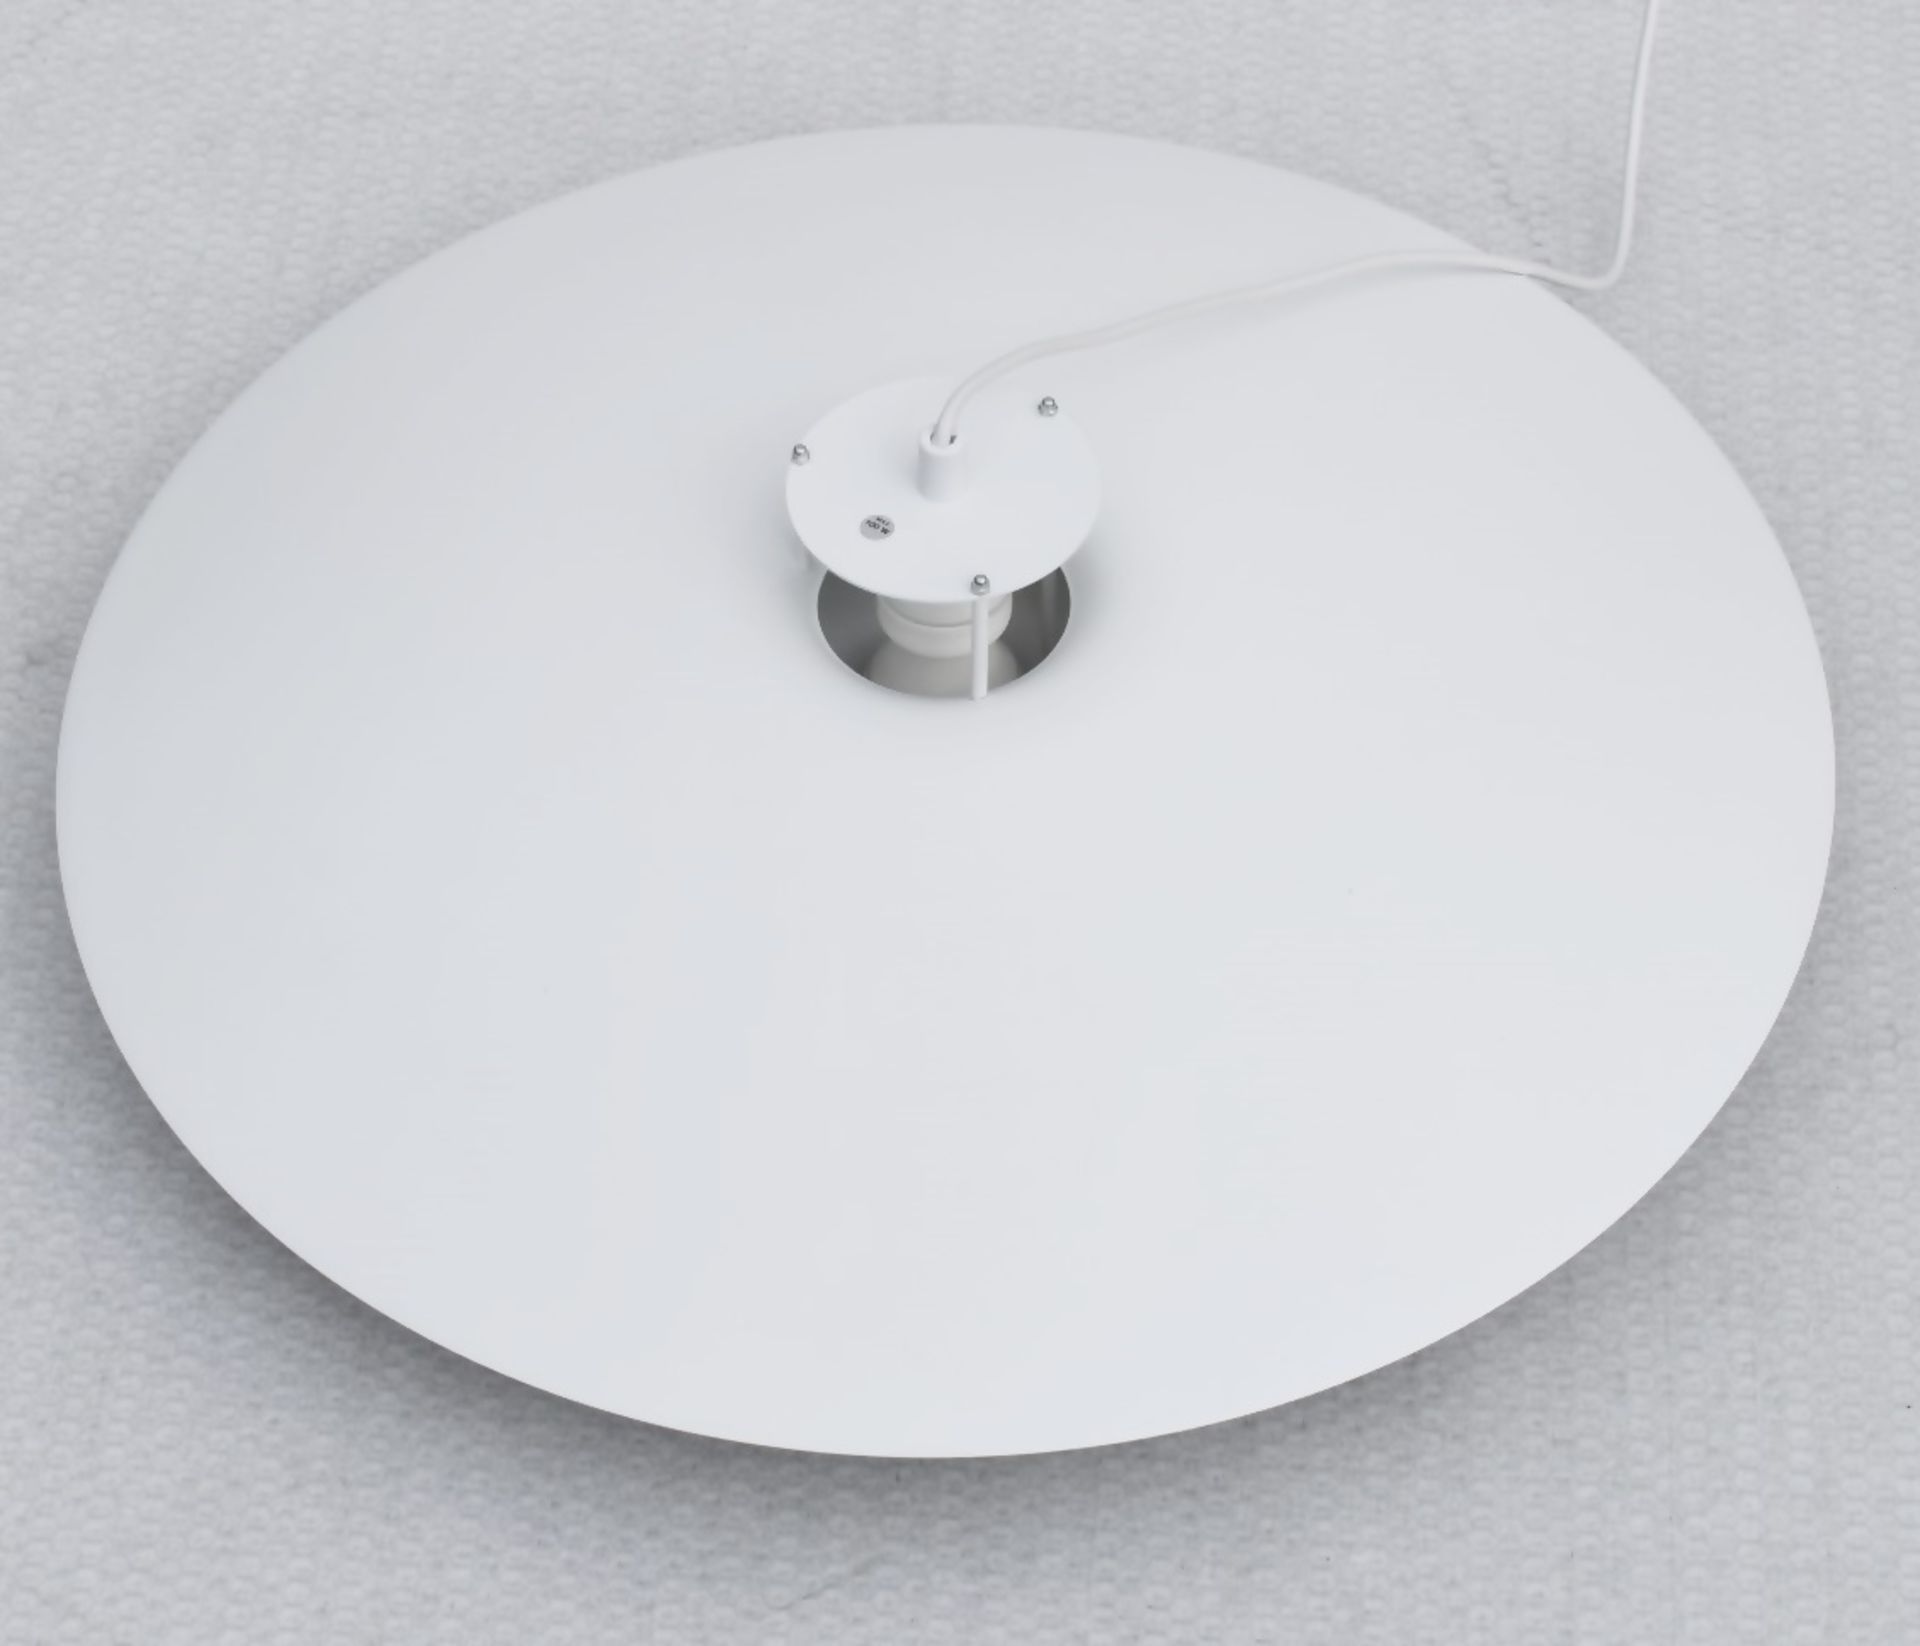 1 x ARTEK 'JL341' Designer Handcrafted Suspension Pendant Lamp In White - Original Price £800.00 - Image 2 of 8